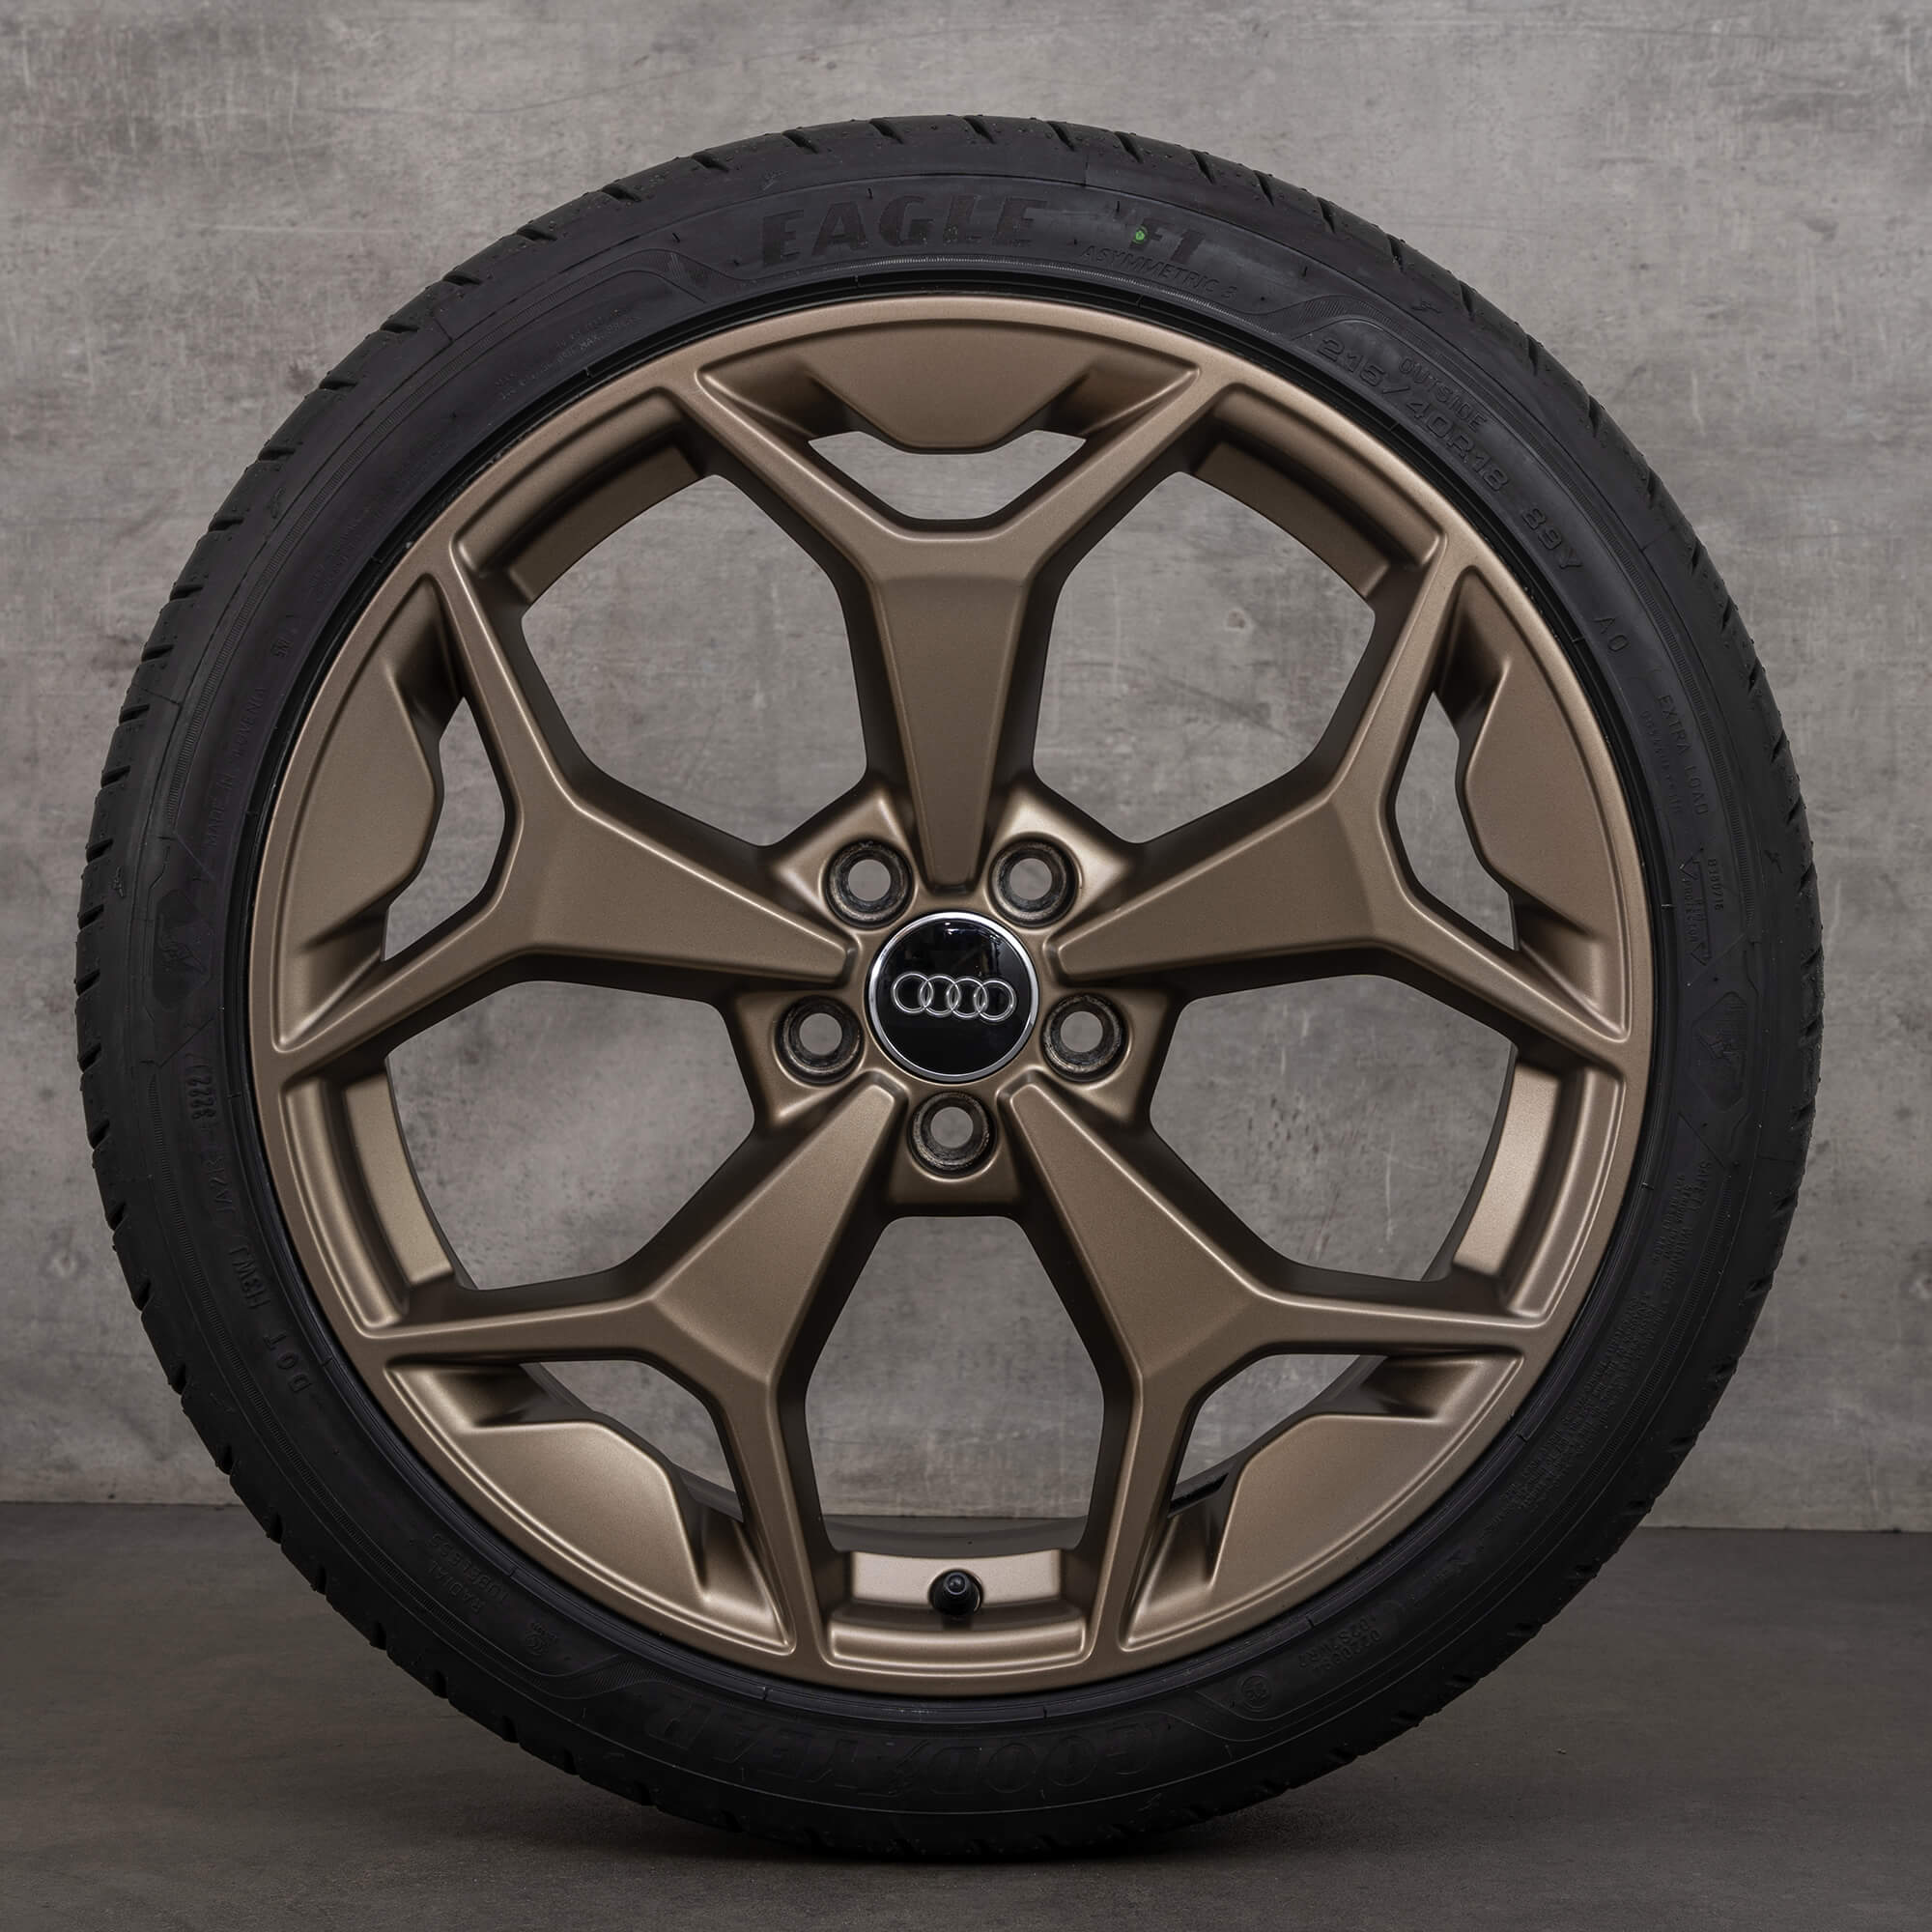 Audi A1 II rims GB sportback bronze 18 inch summer tires 82A601025AK